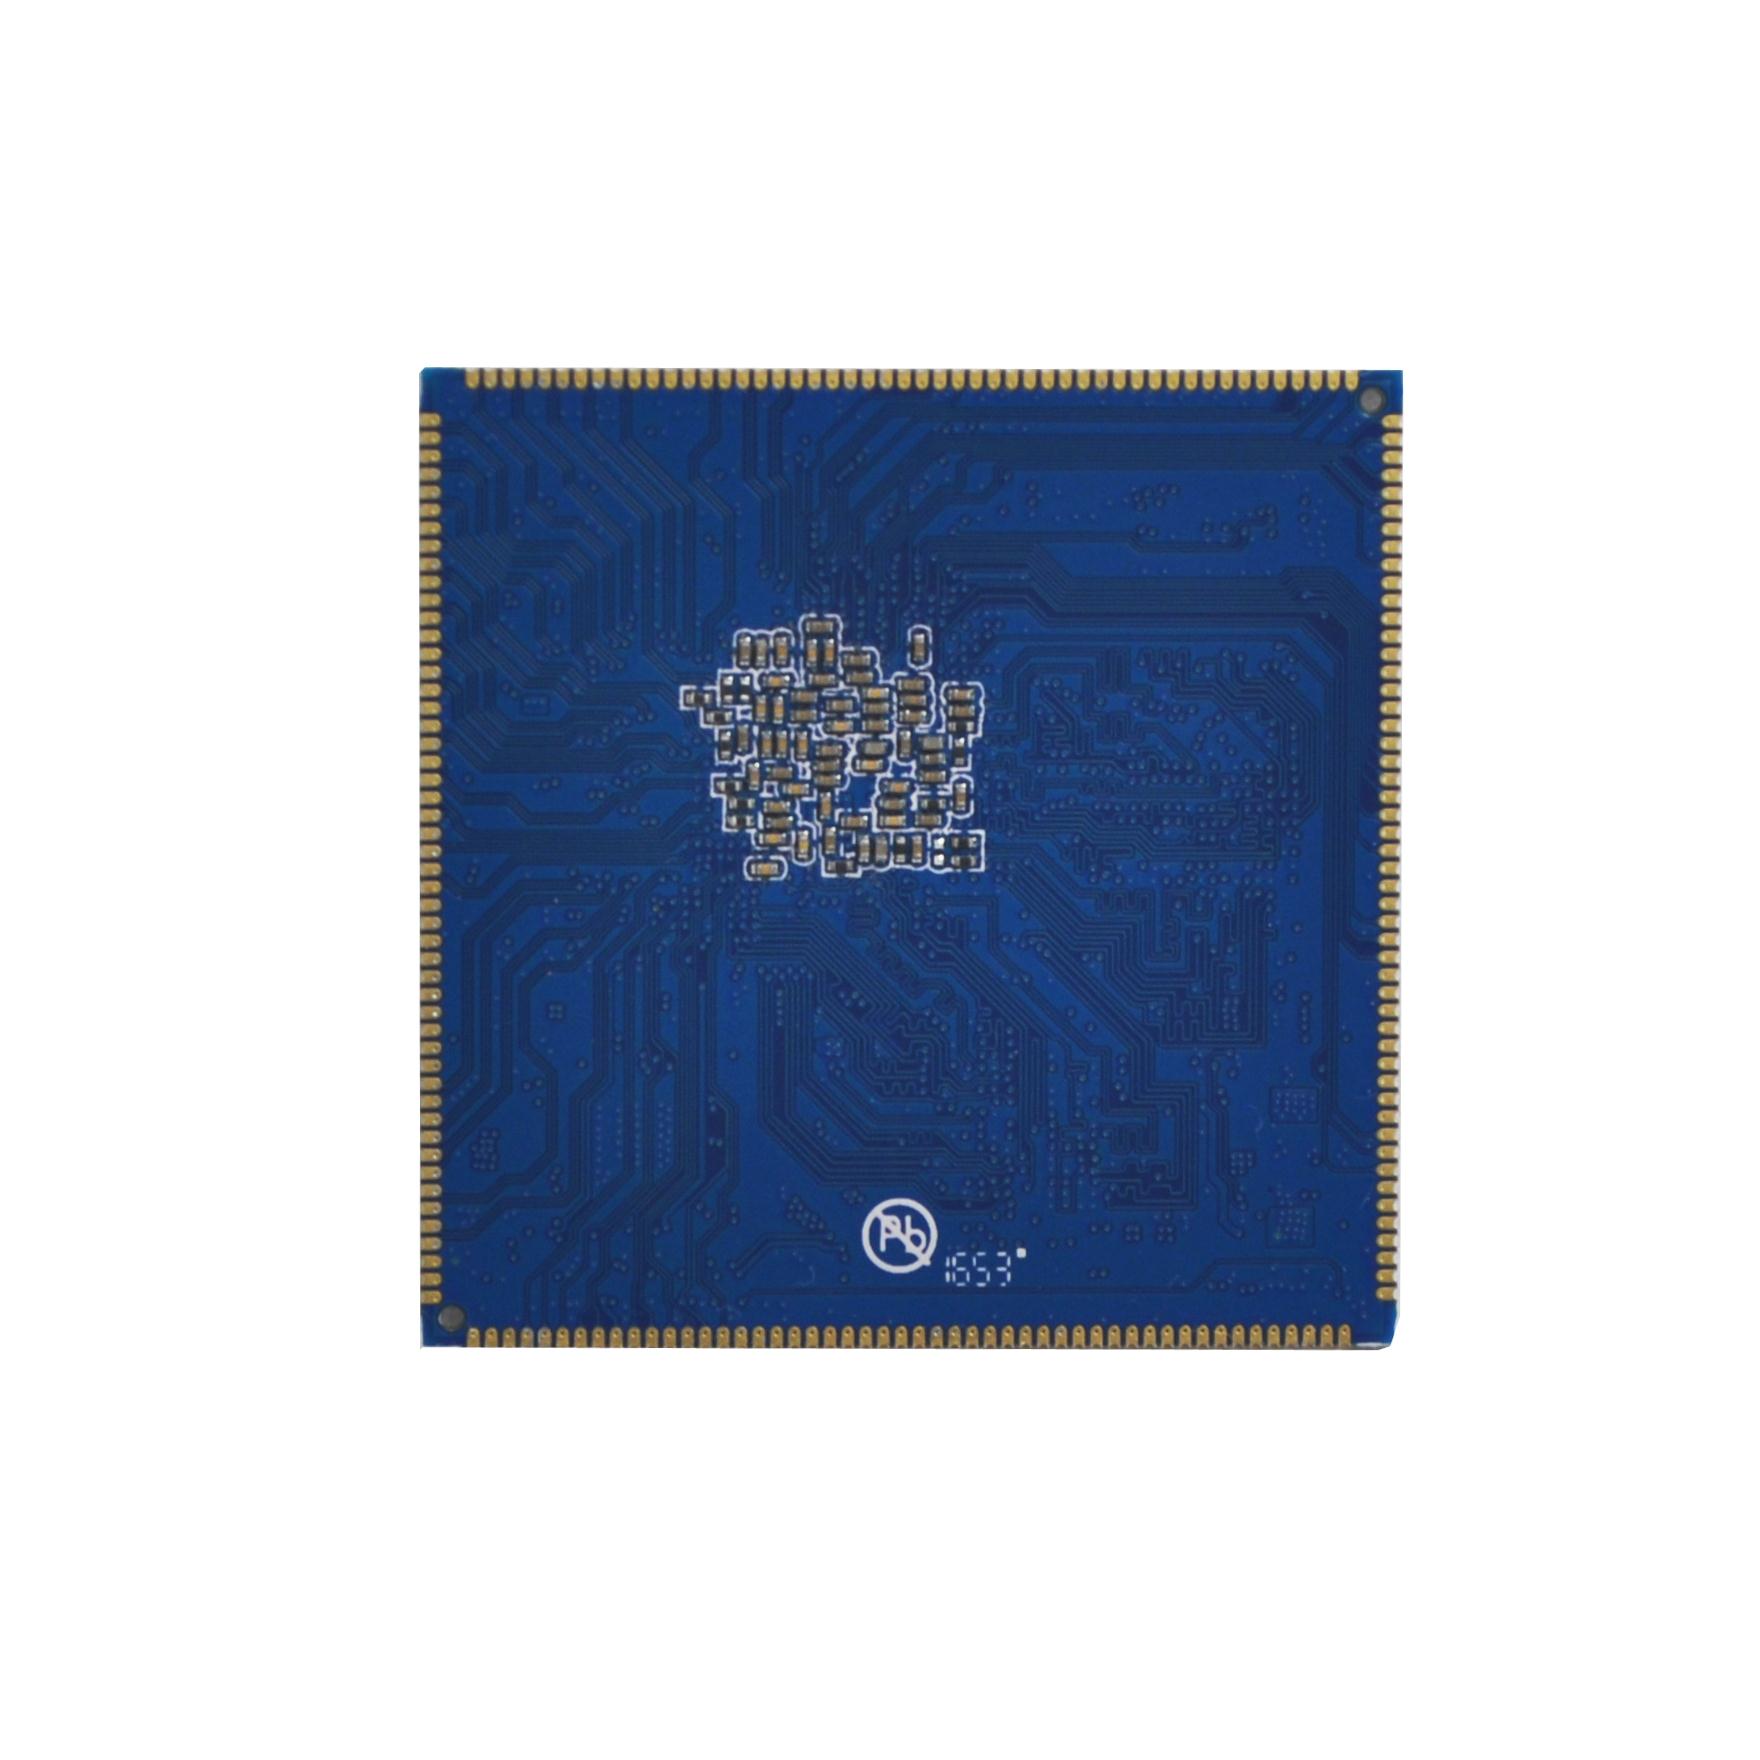 九鼎创展瑞芯微RK3399核心板 6核64位CPU高性能Mali-T860 GPU-图2